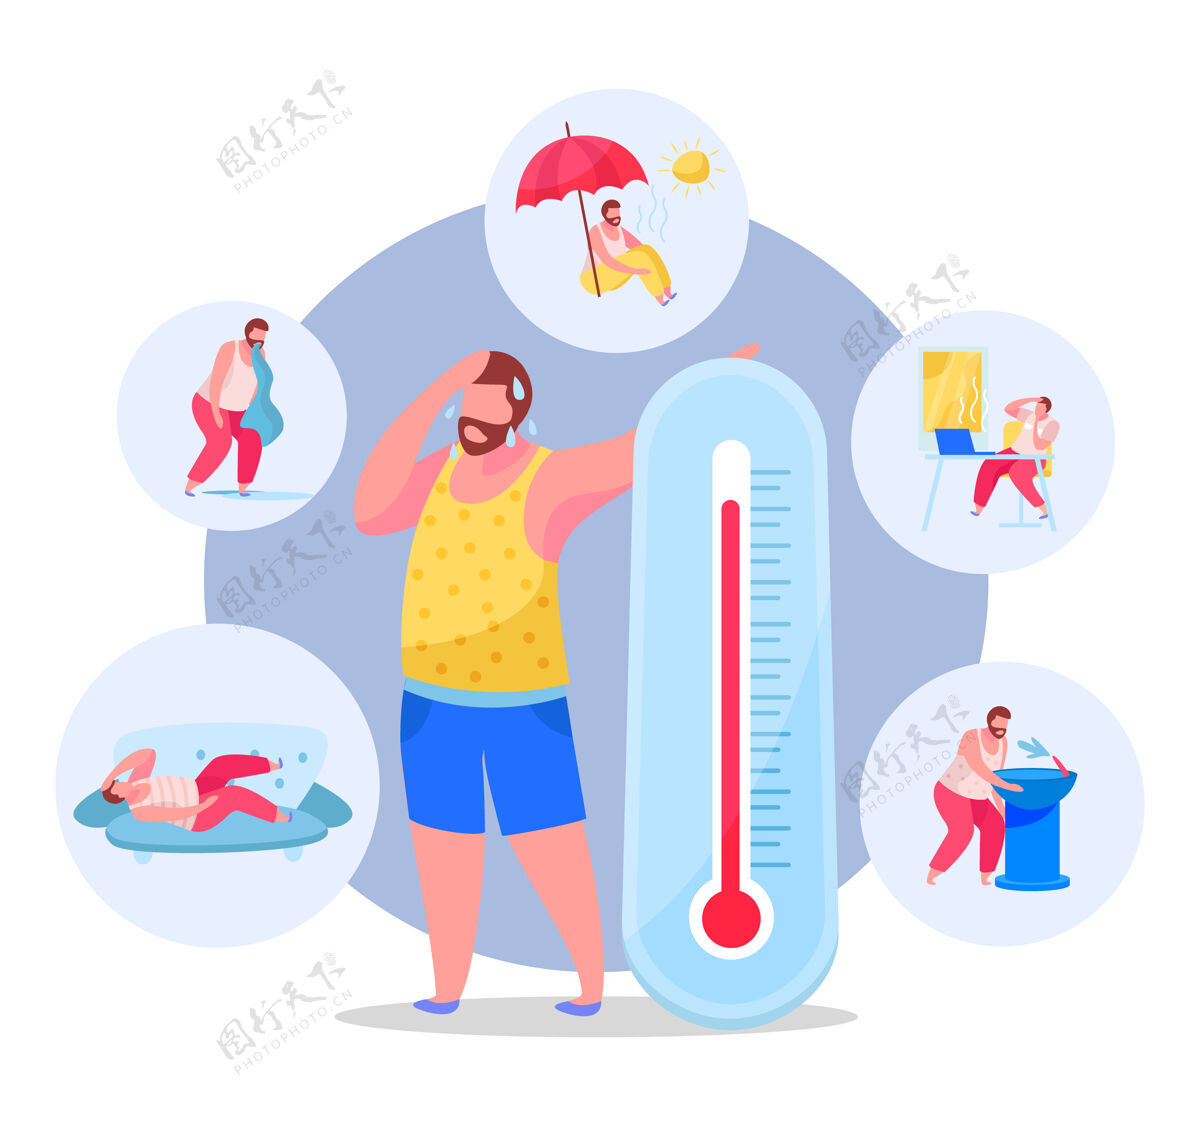 循环夏季防暑降温提示集体温计夏季症状